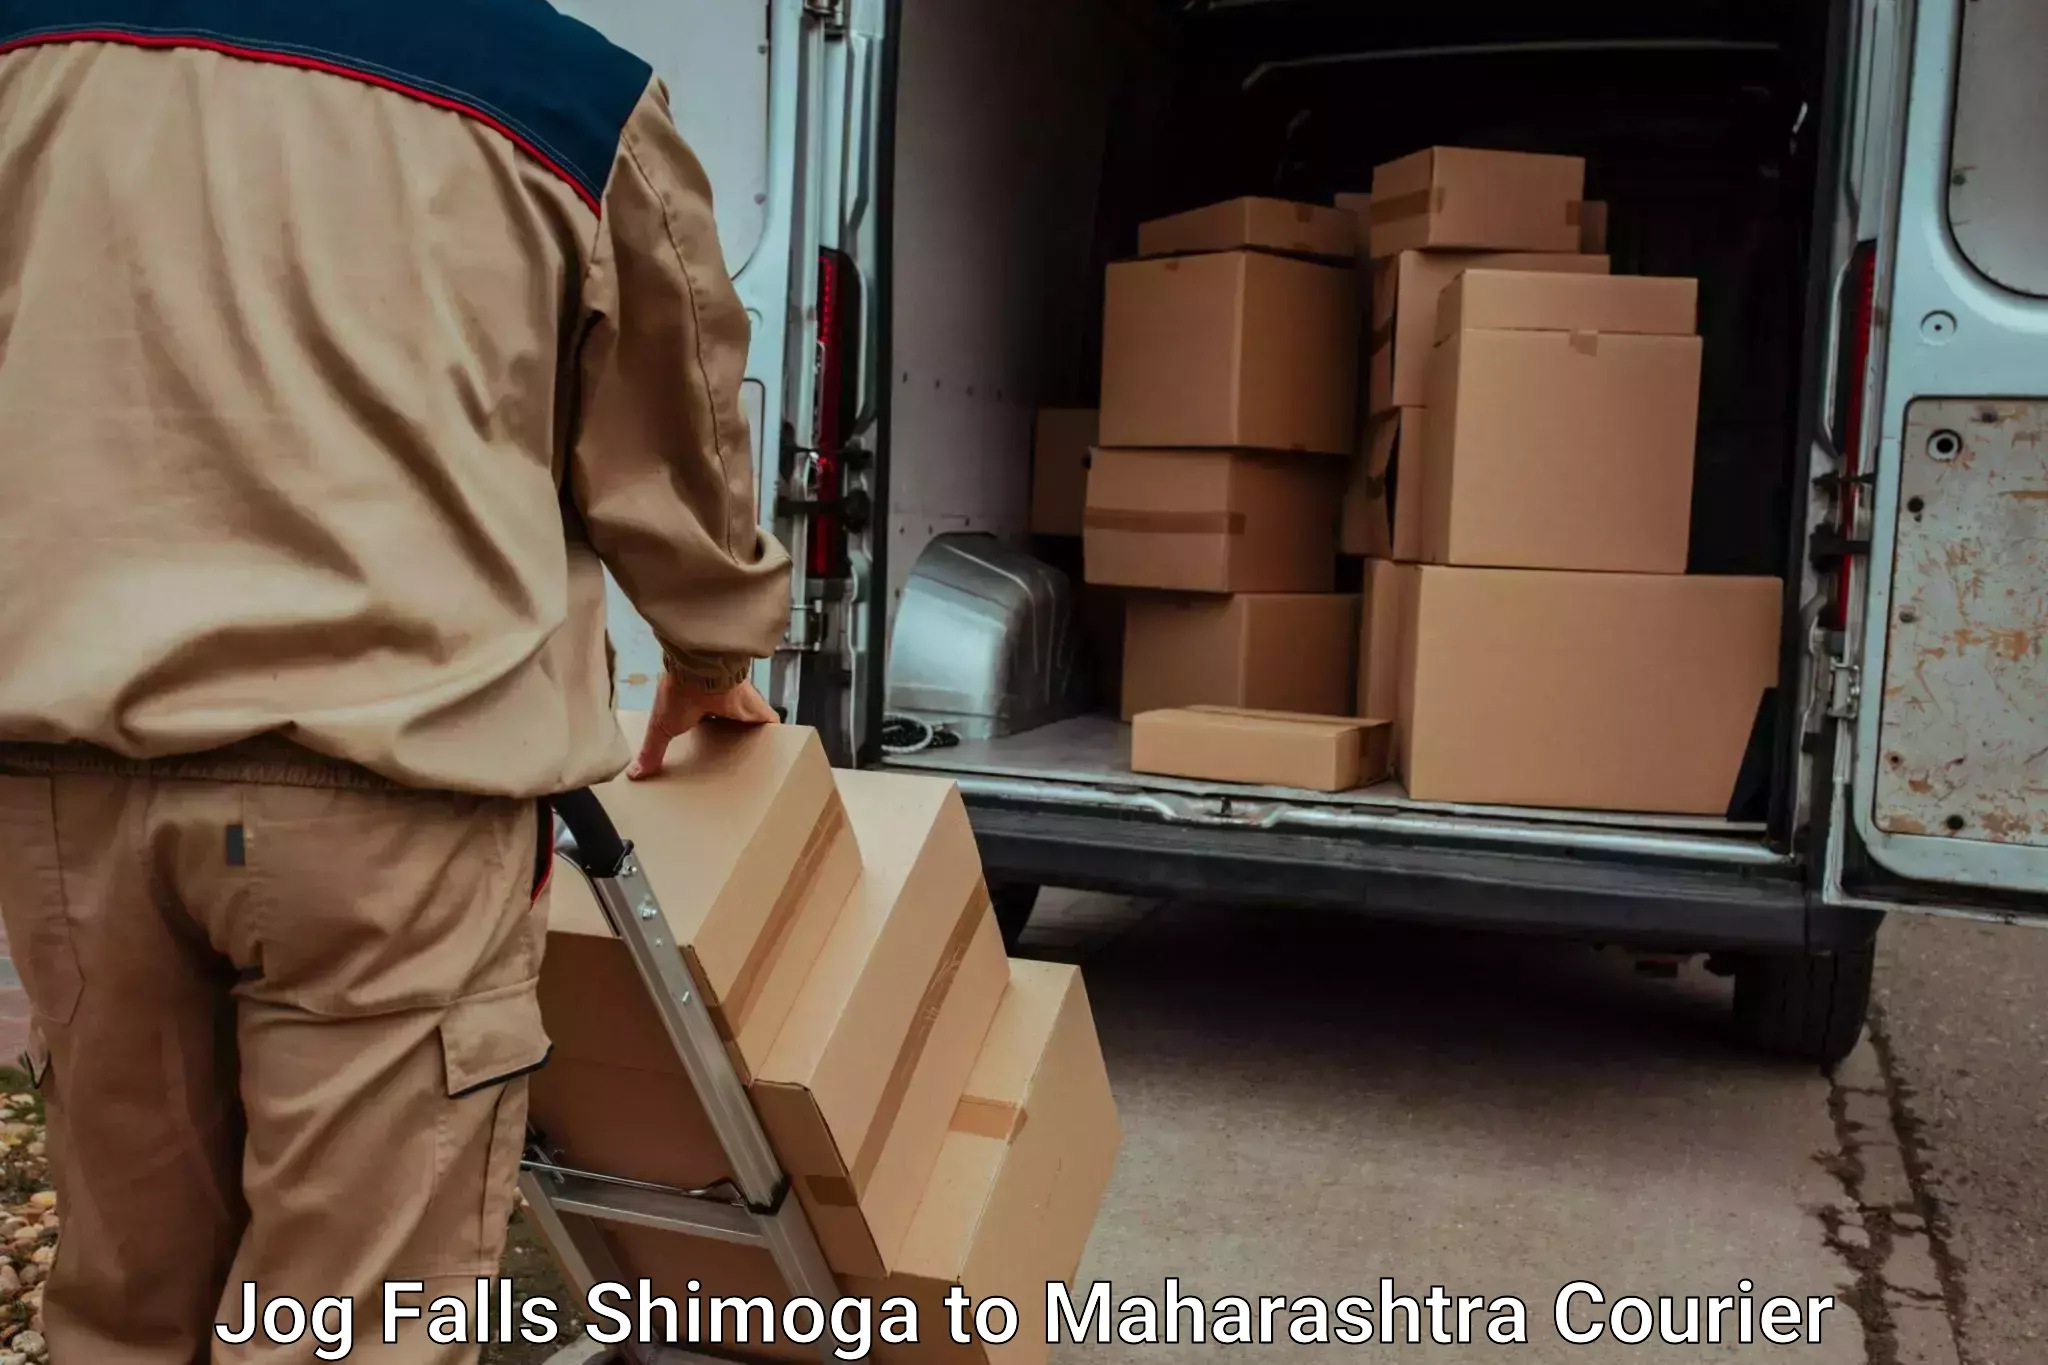 Luggage transport operations Jog Falls Shimoga to IIIT Pune